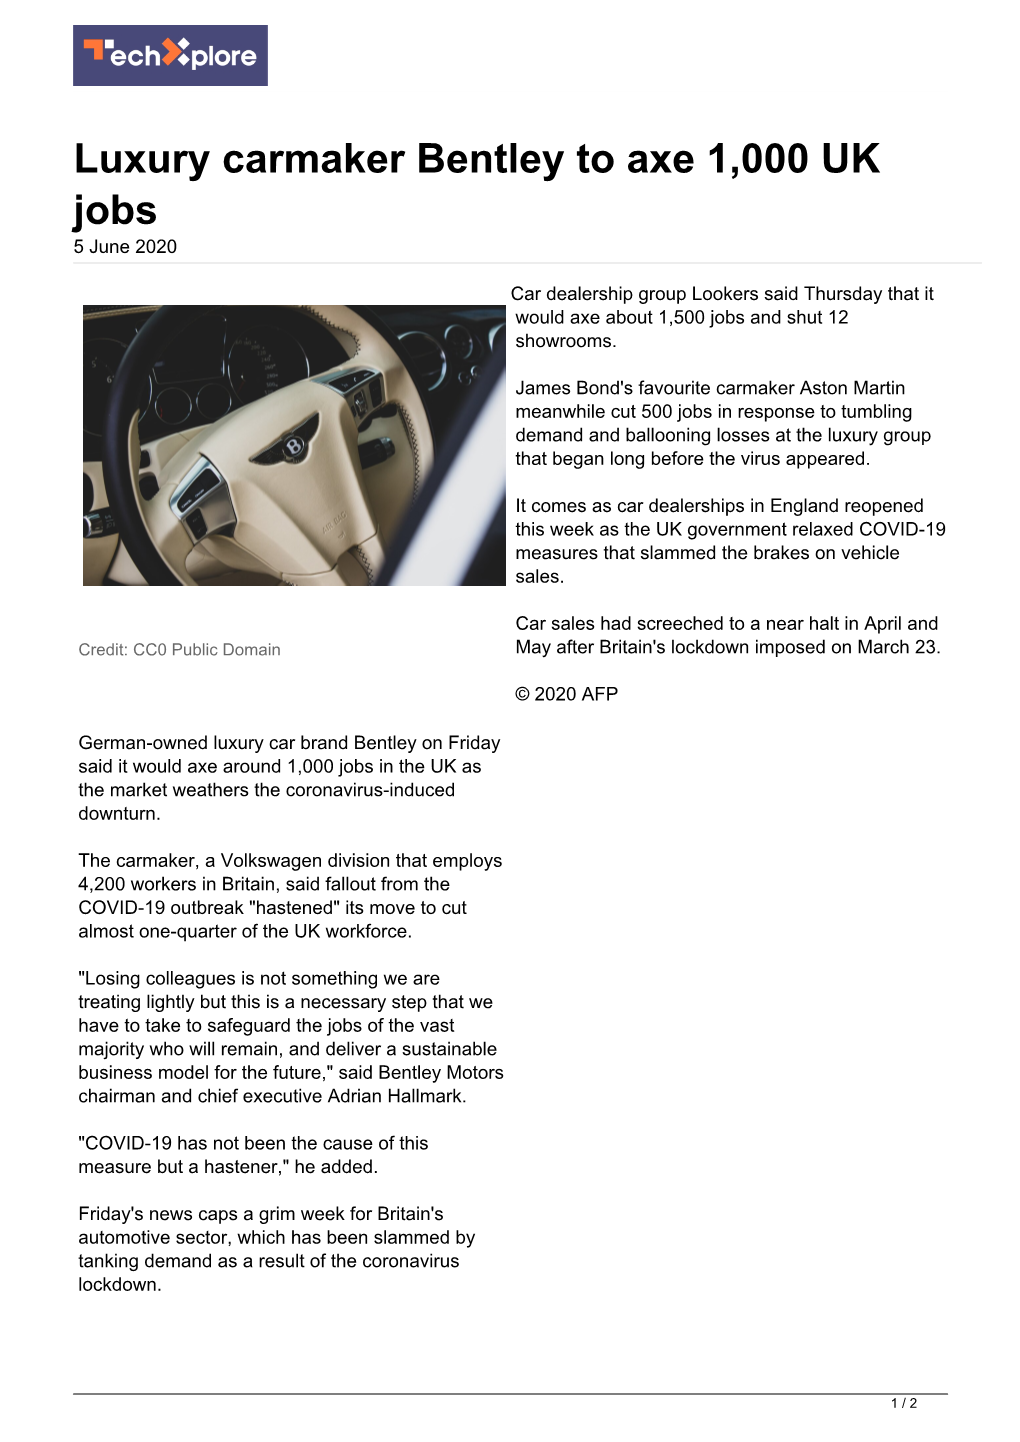 Luxury Carmaker Bentley to Axe 1,000 UK Jobs 5 June 2020